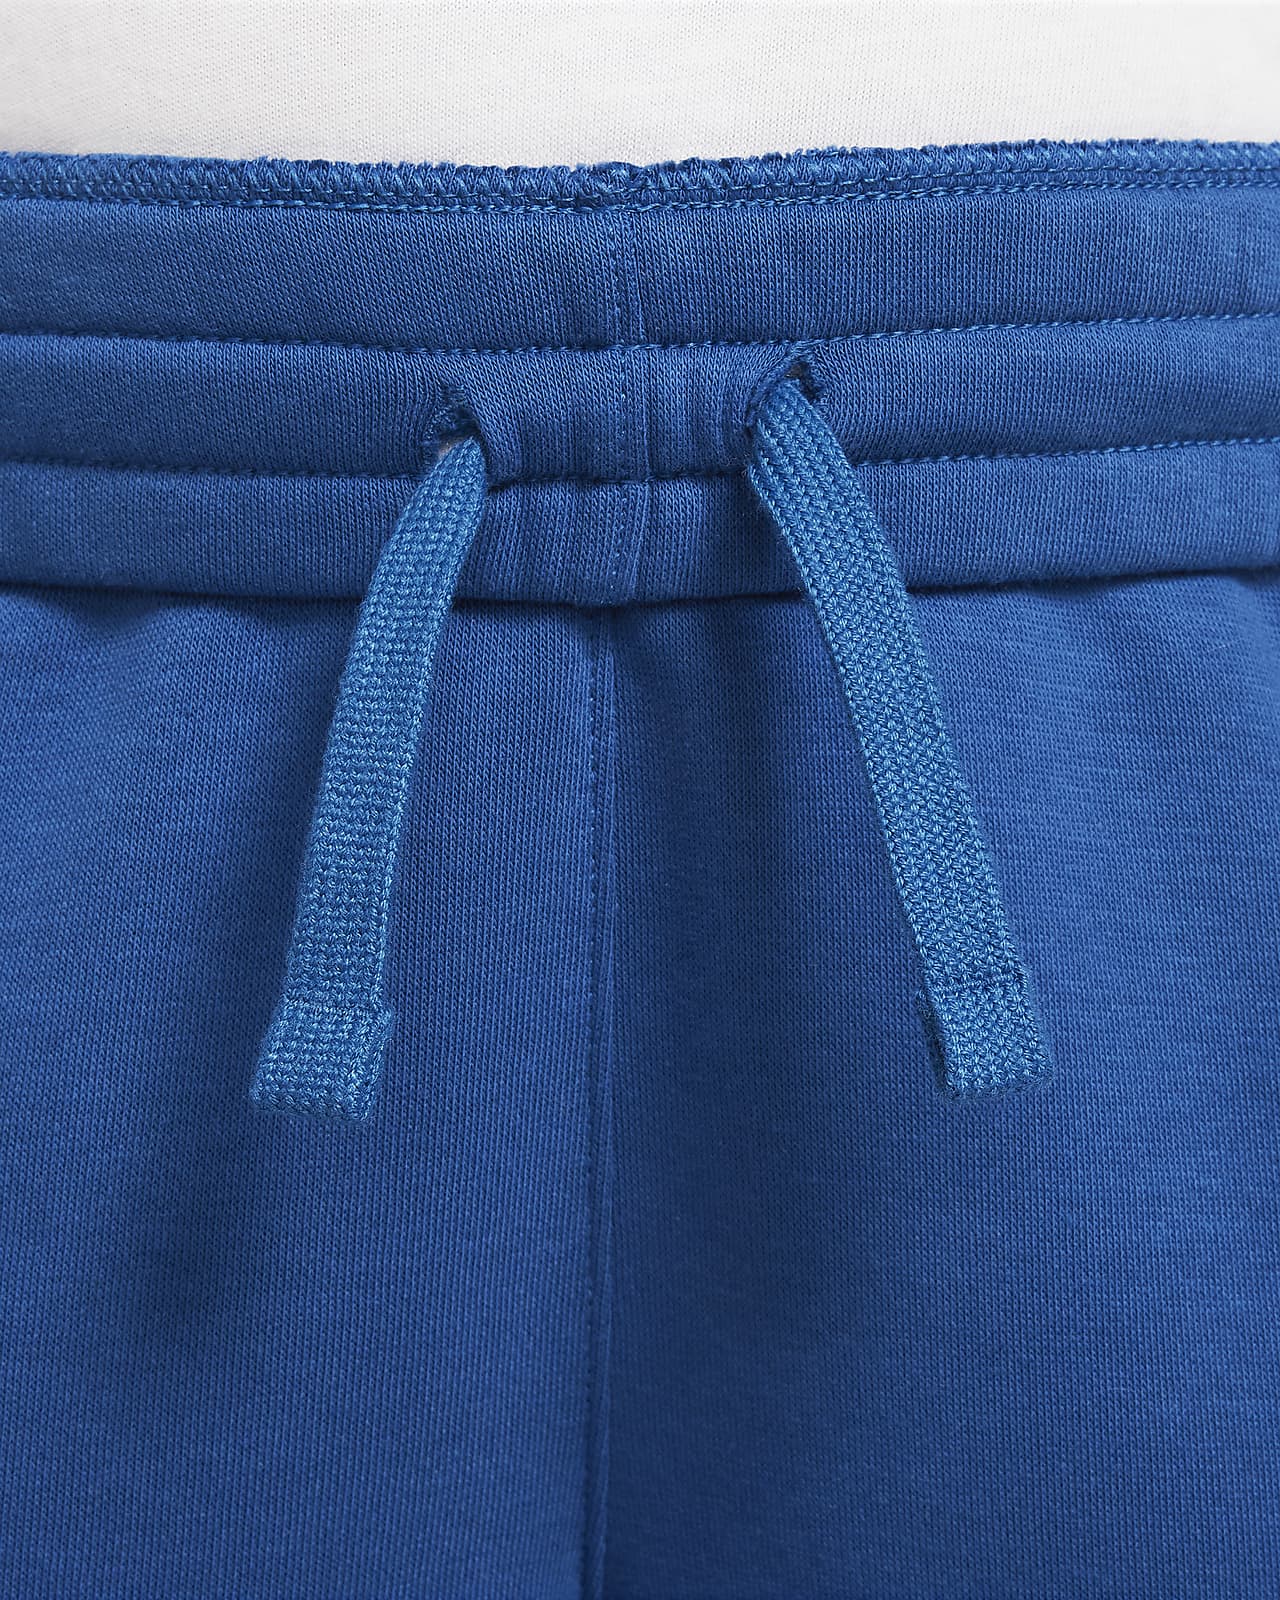 Navy Blue Sweat Pant Joggers  Vetement d'interieur, Taille de